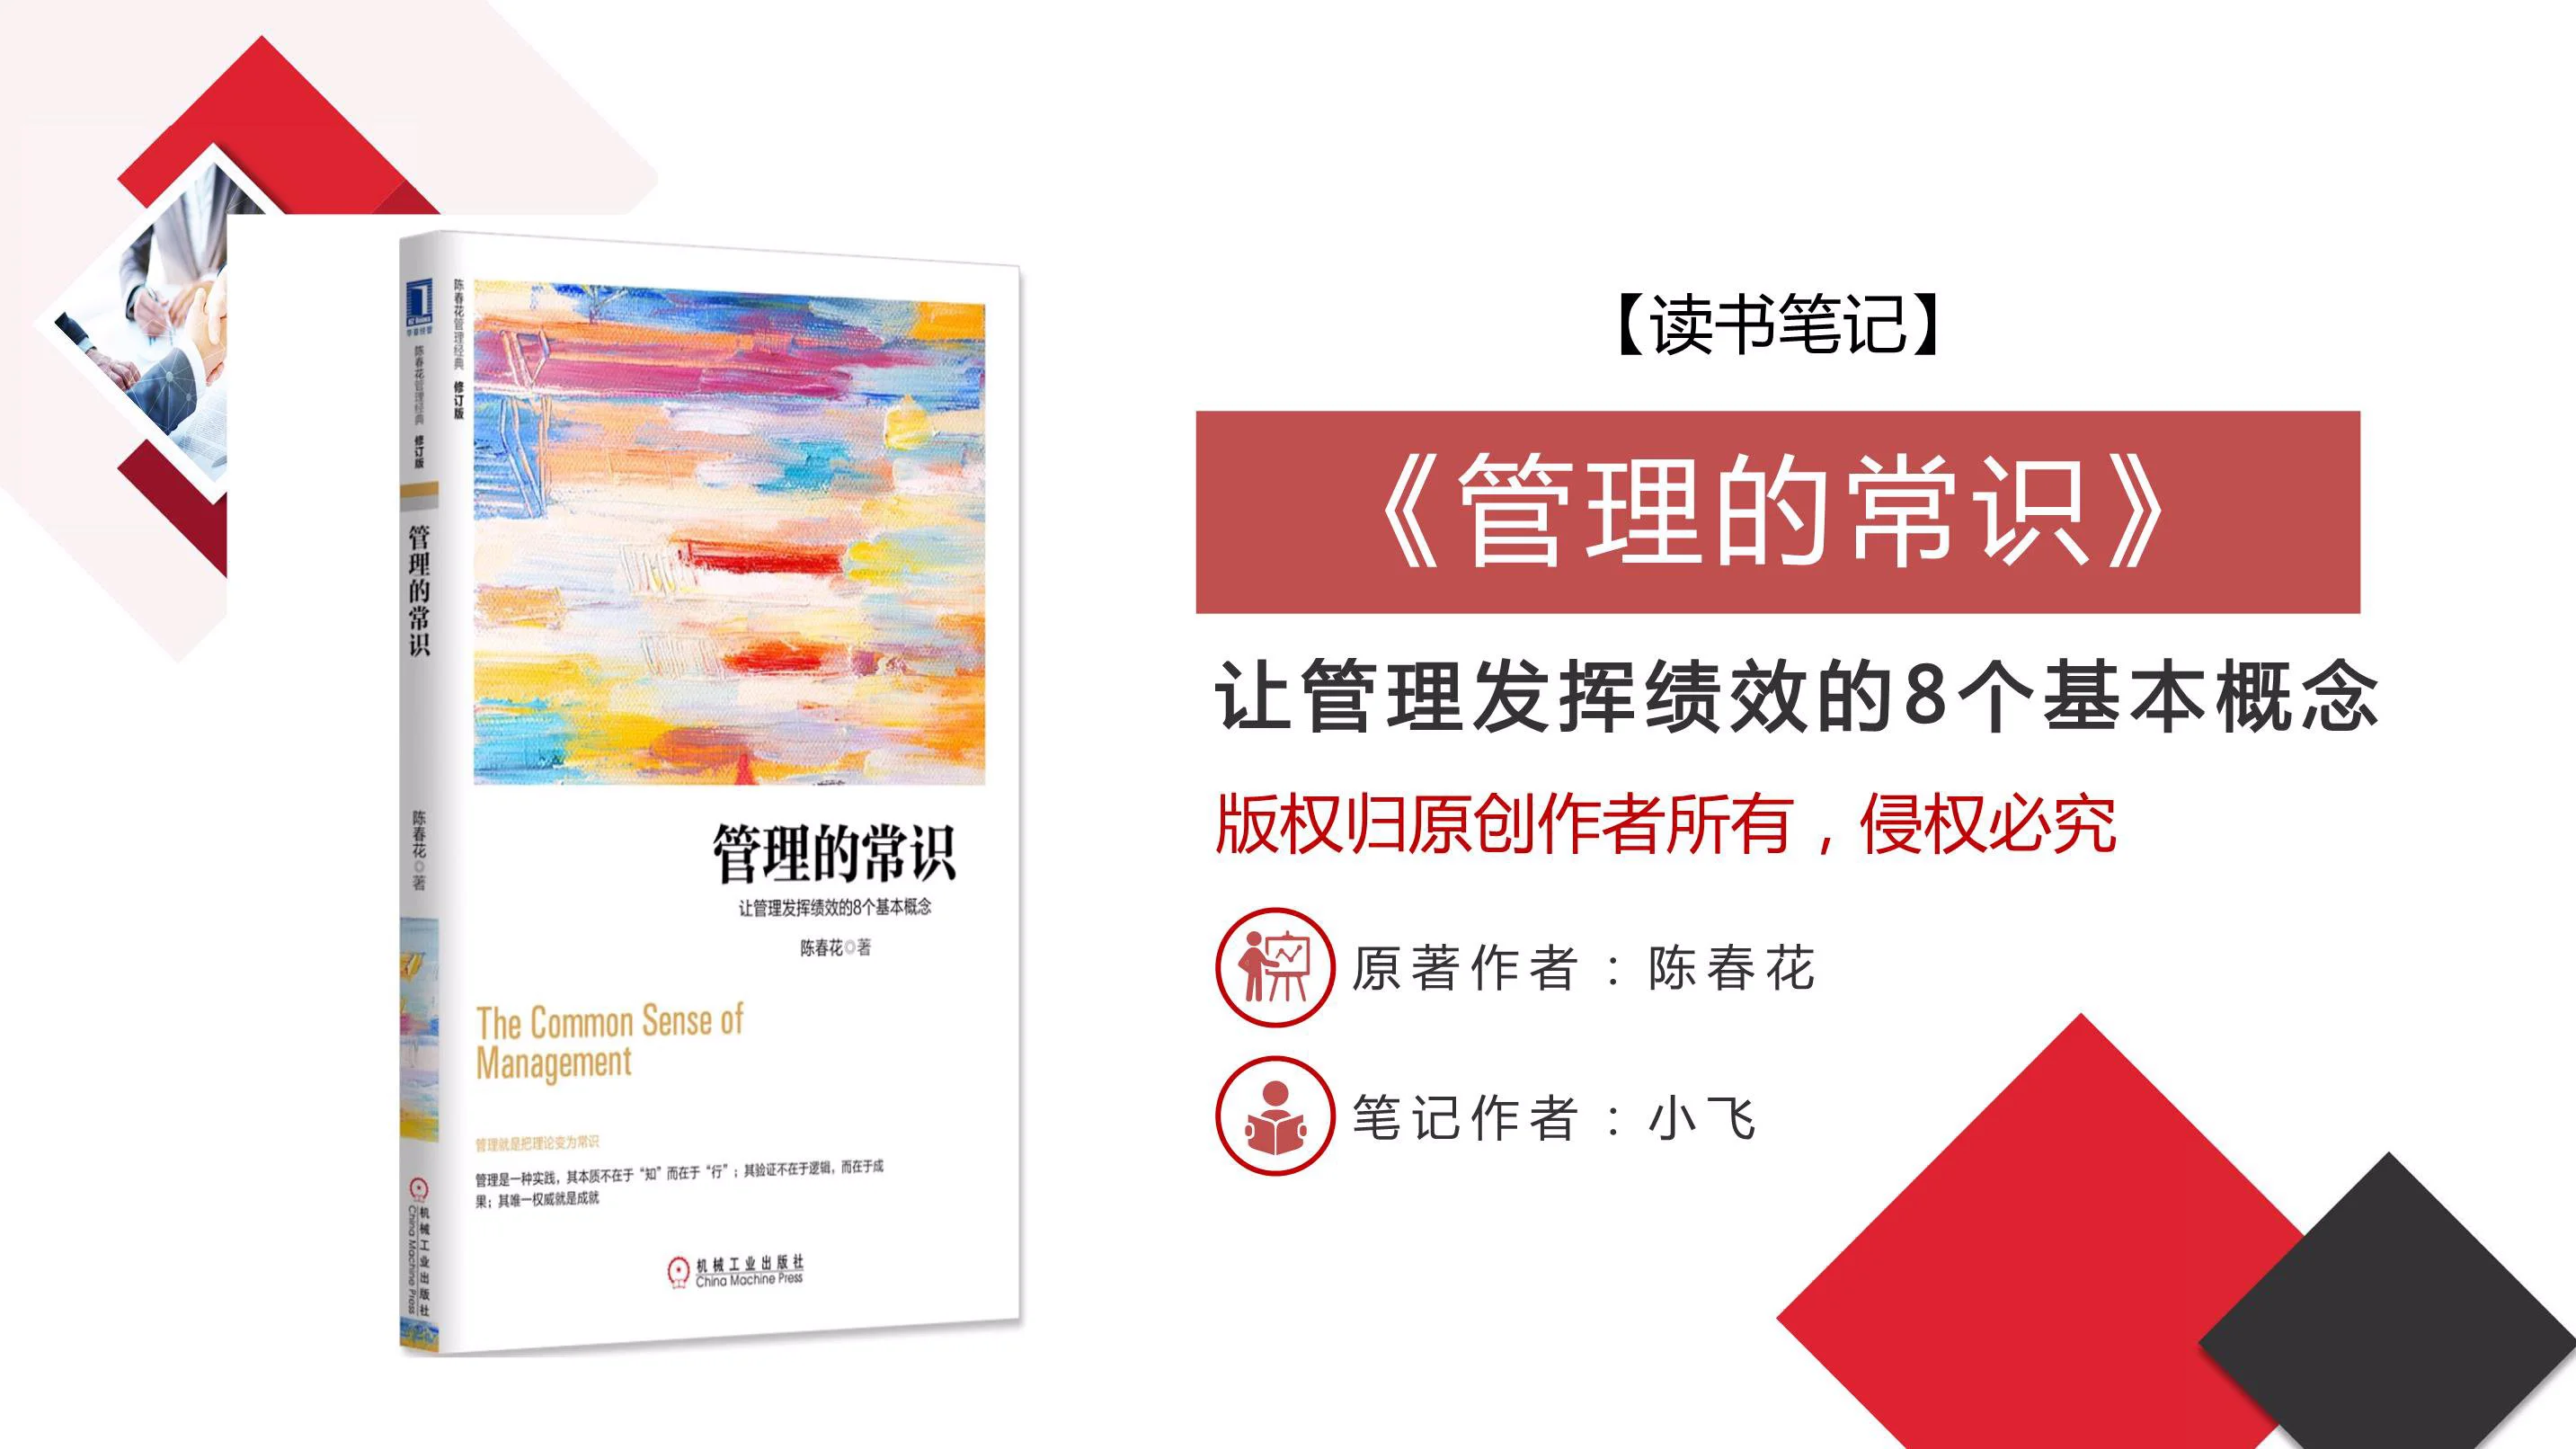 「管理学者+商界领袖」陈春花《管理的常识》PDF读书笔记插图1